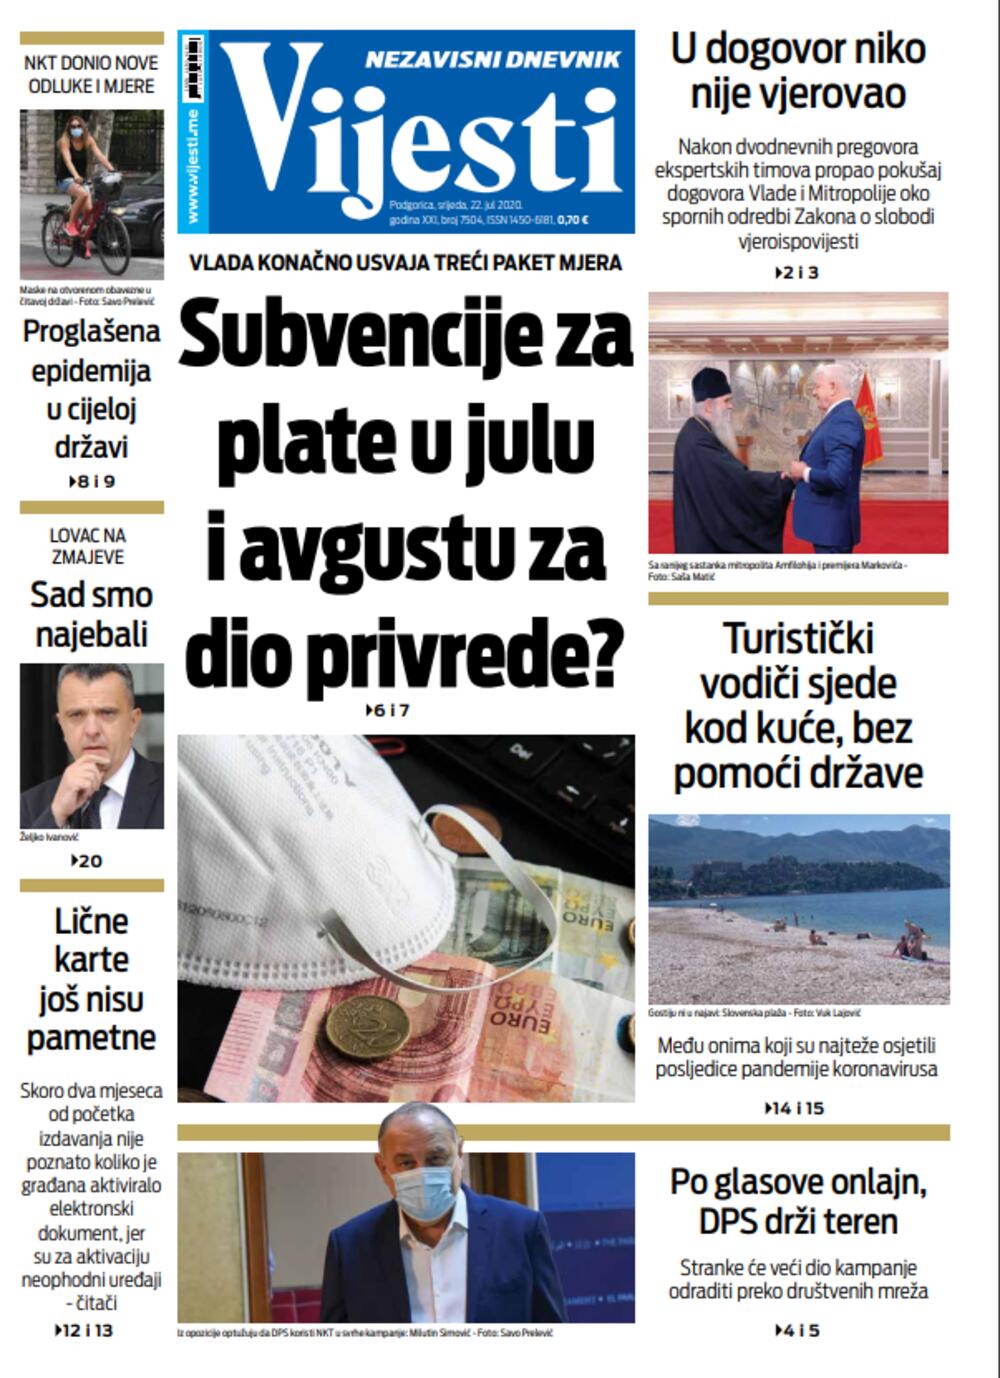 Naslovna strana "Vijesti" 22.7.2020., Foto: Vijesti